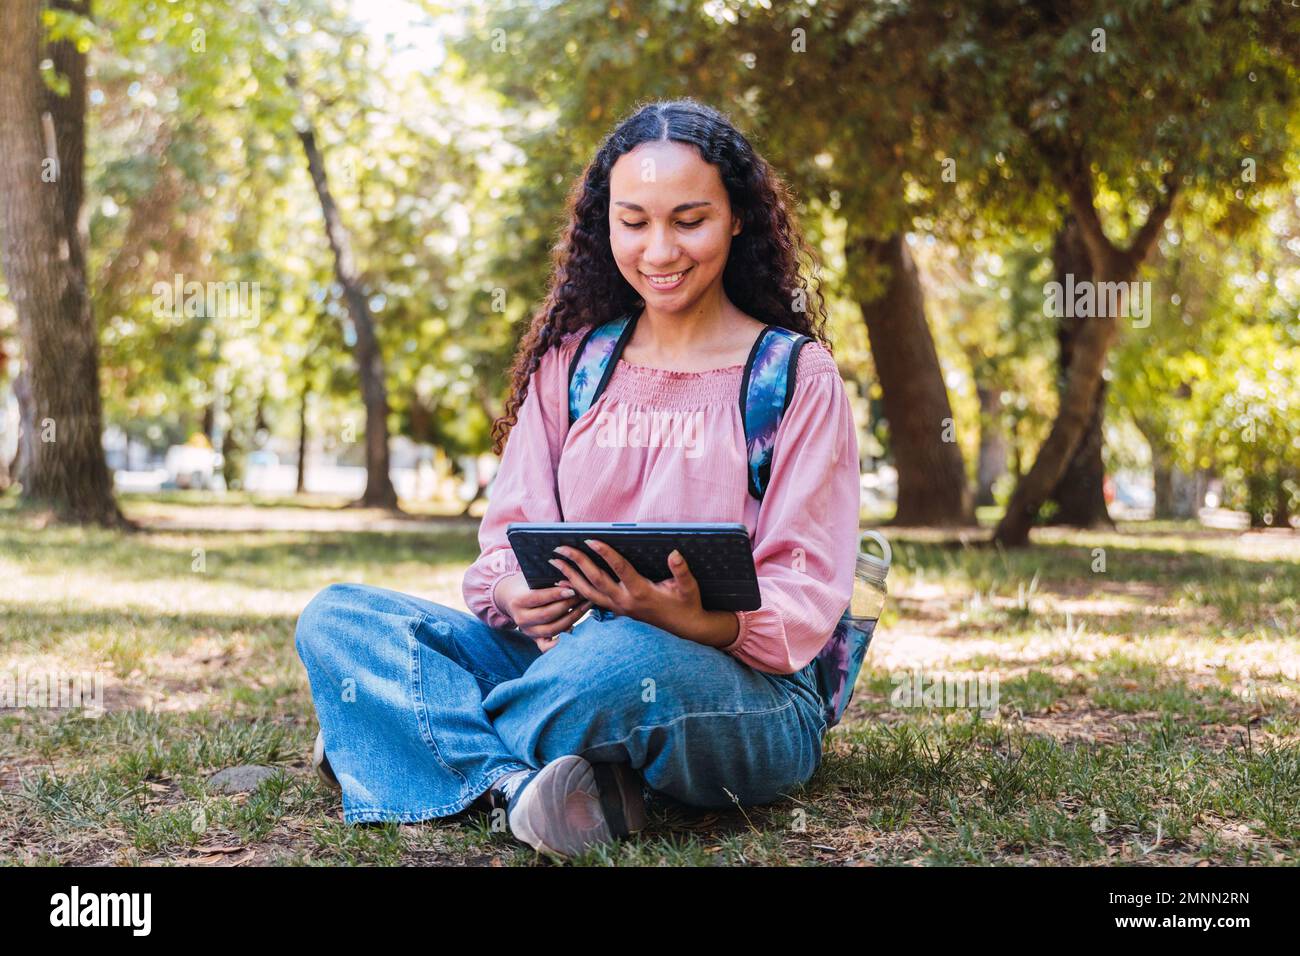 Studentessa universitaria latina sorridente e con un tablet seduto all'aperto in un parco sull'erba Foto Stock